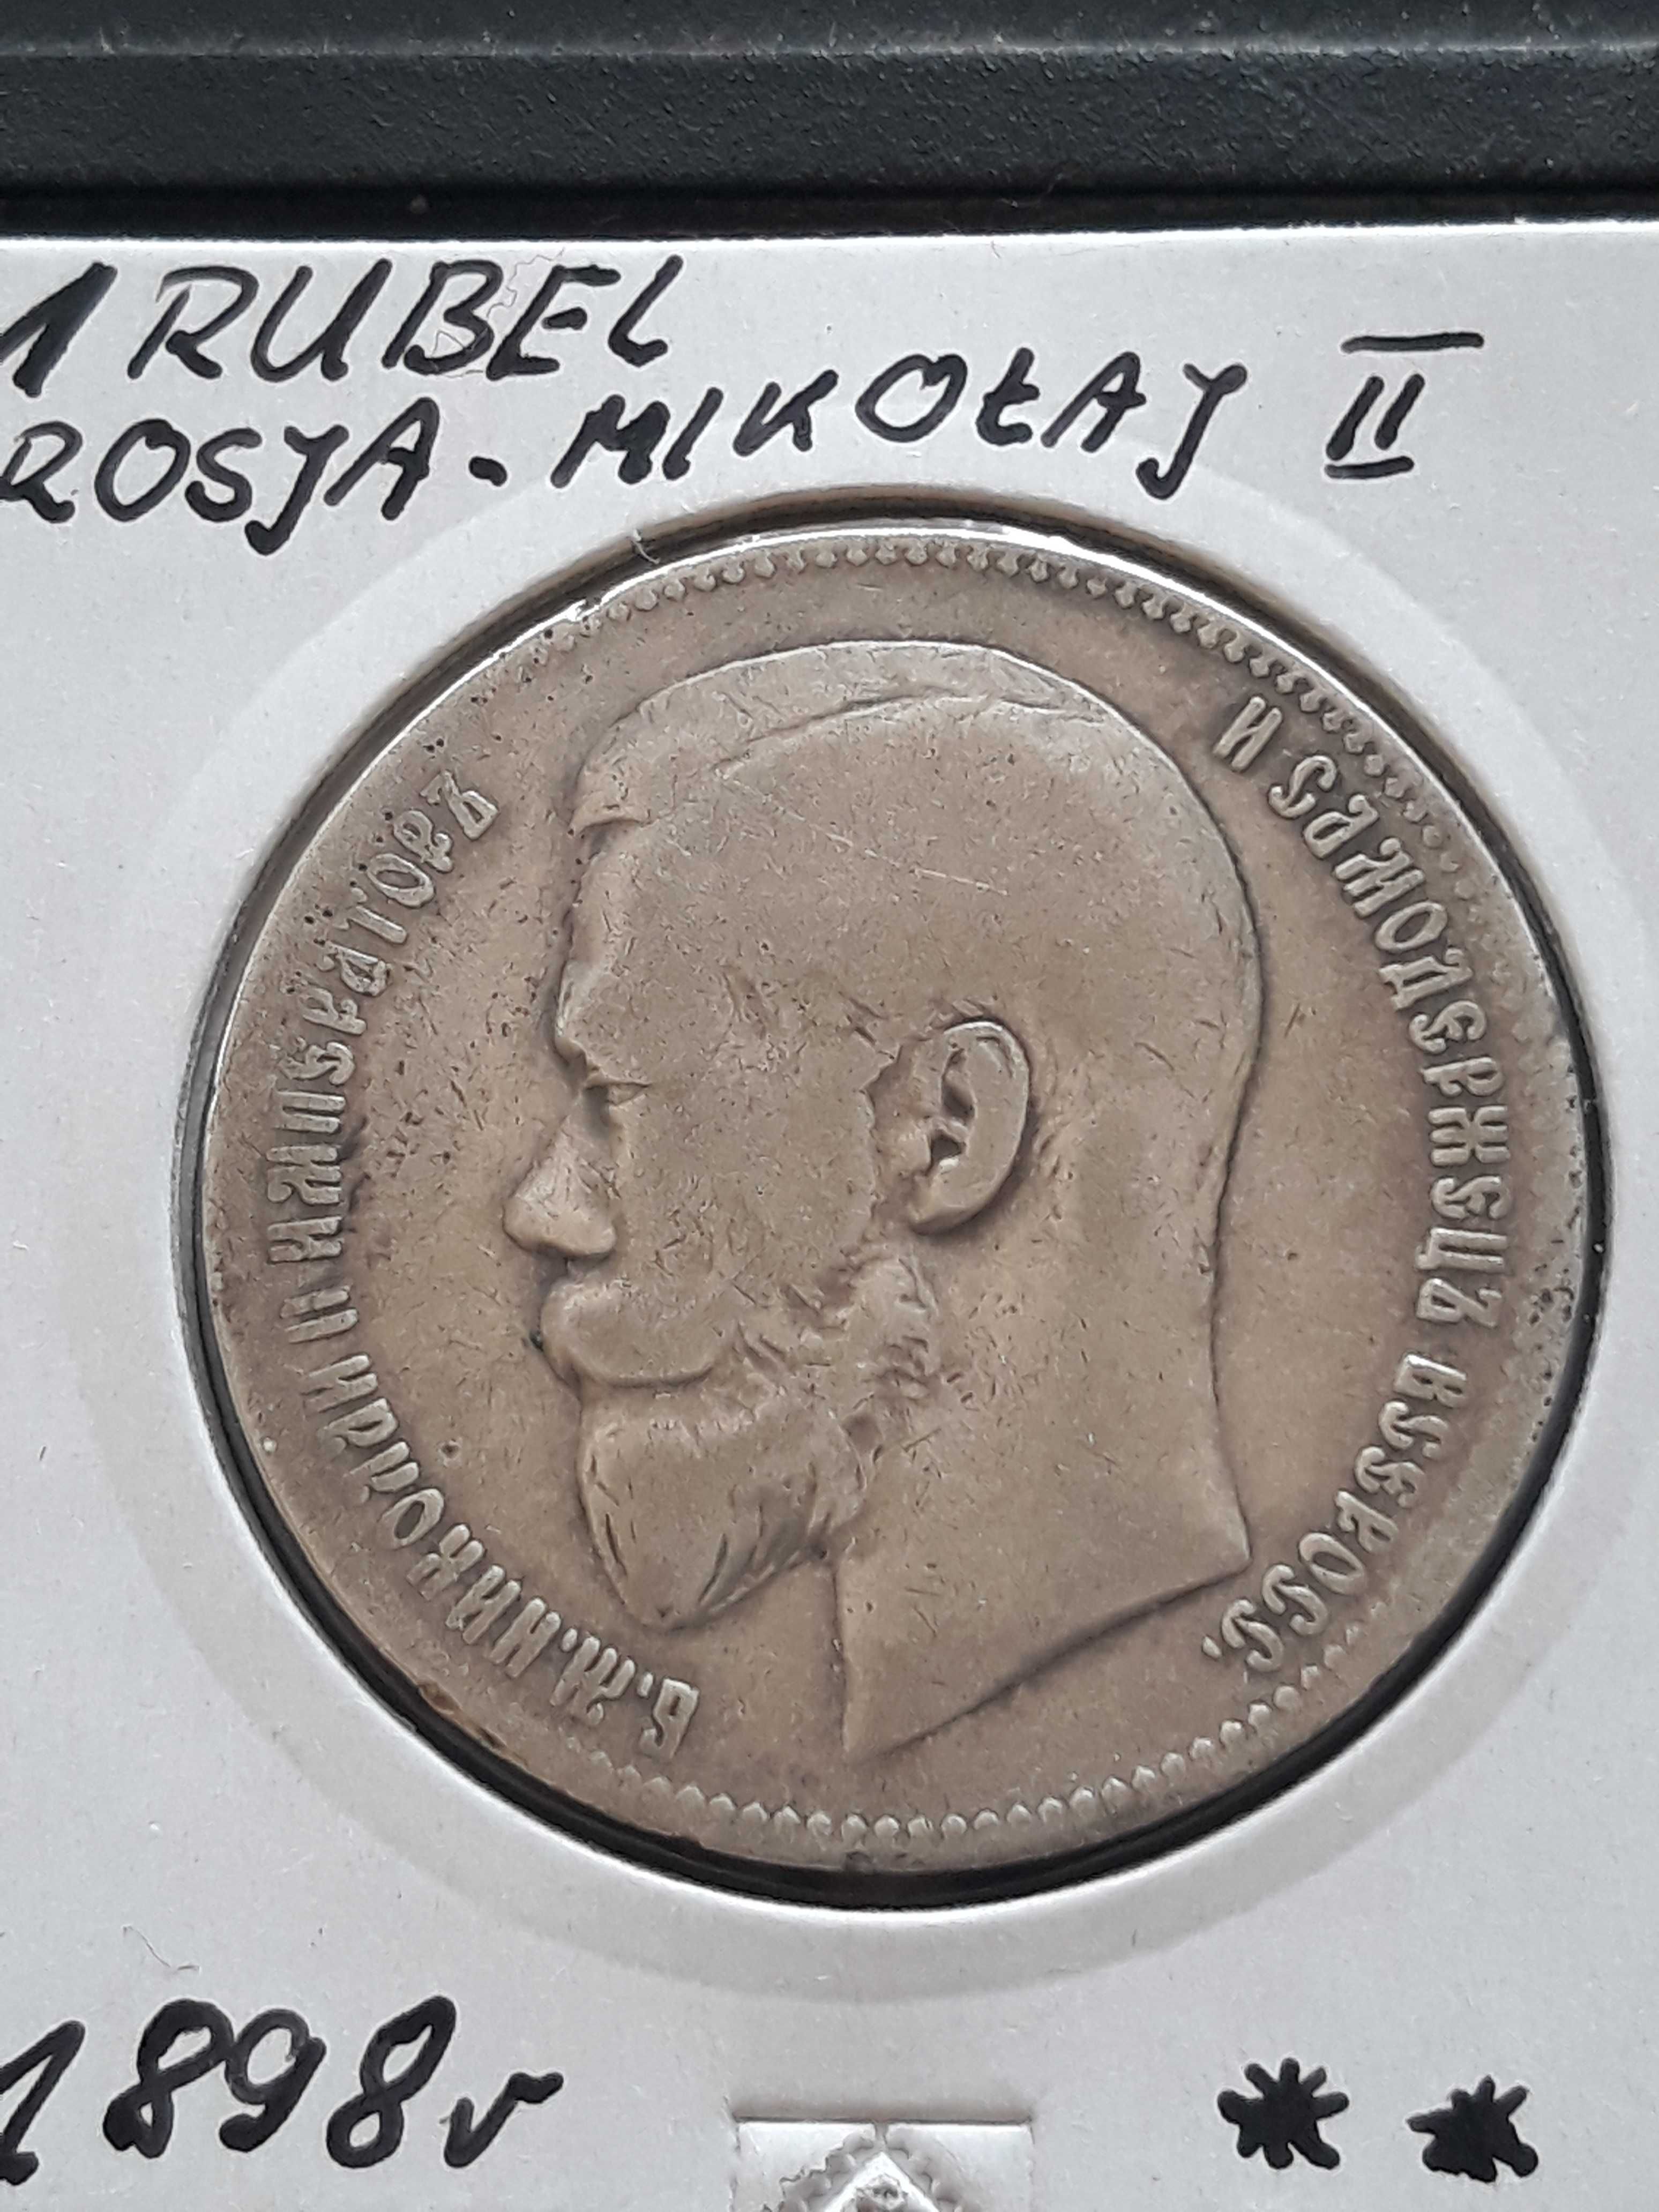 1 Rubel Rosja Mikołaj II Romanow - 1898 r**-Pięknie zachowana